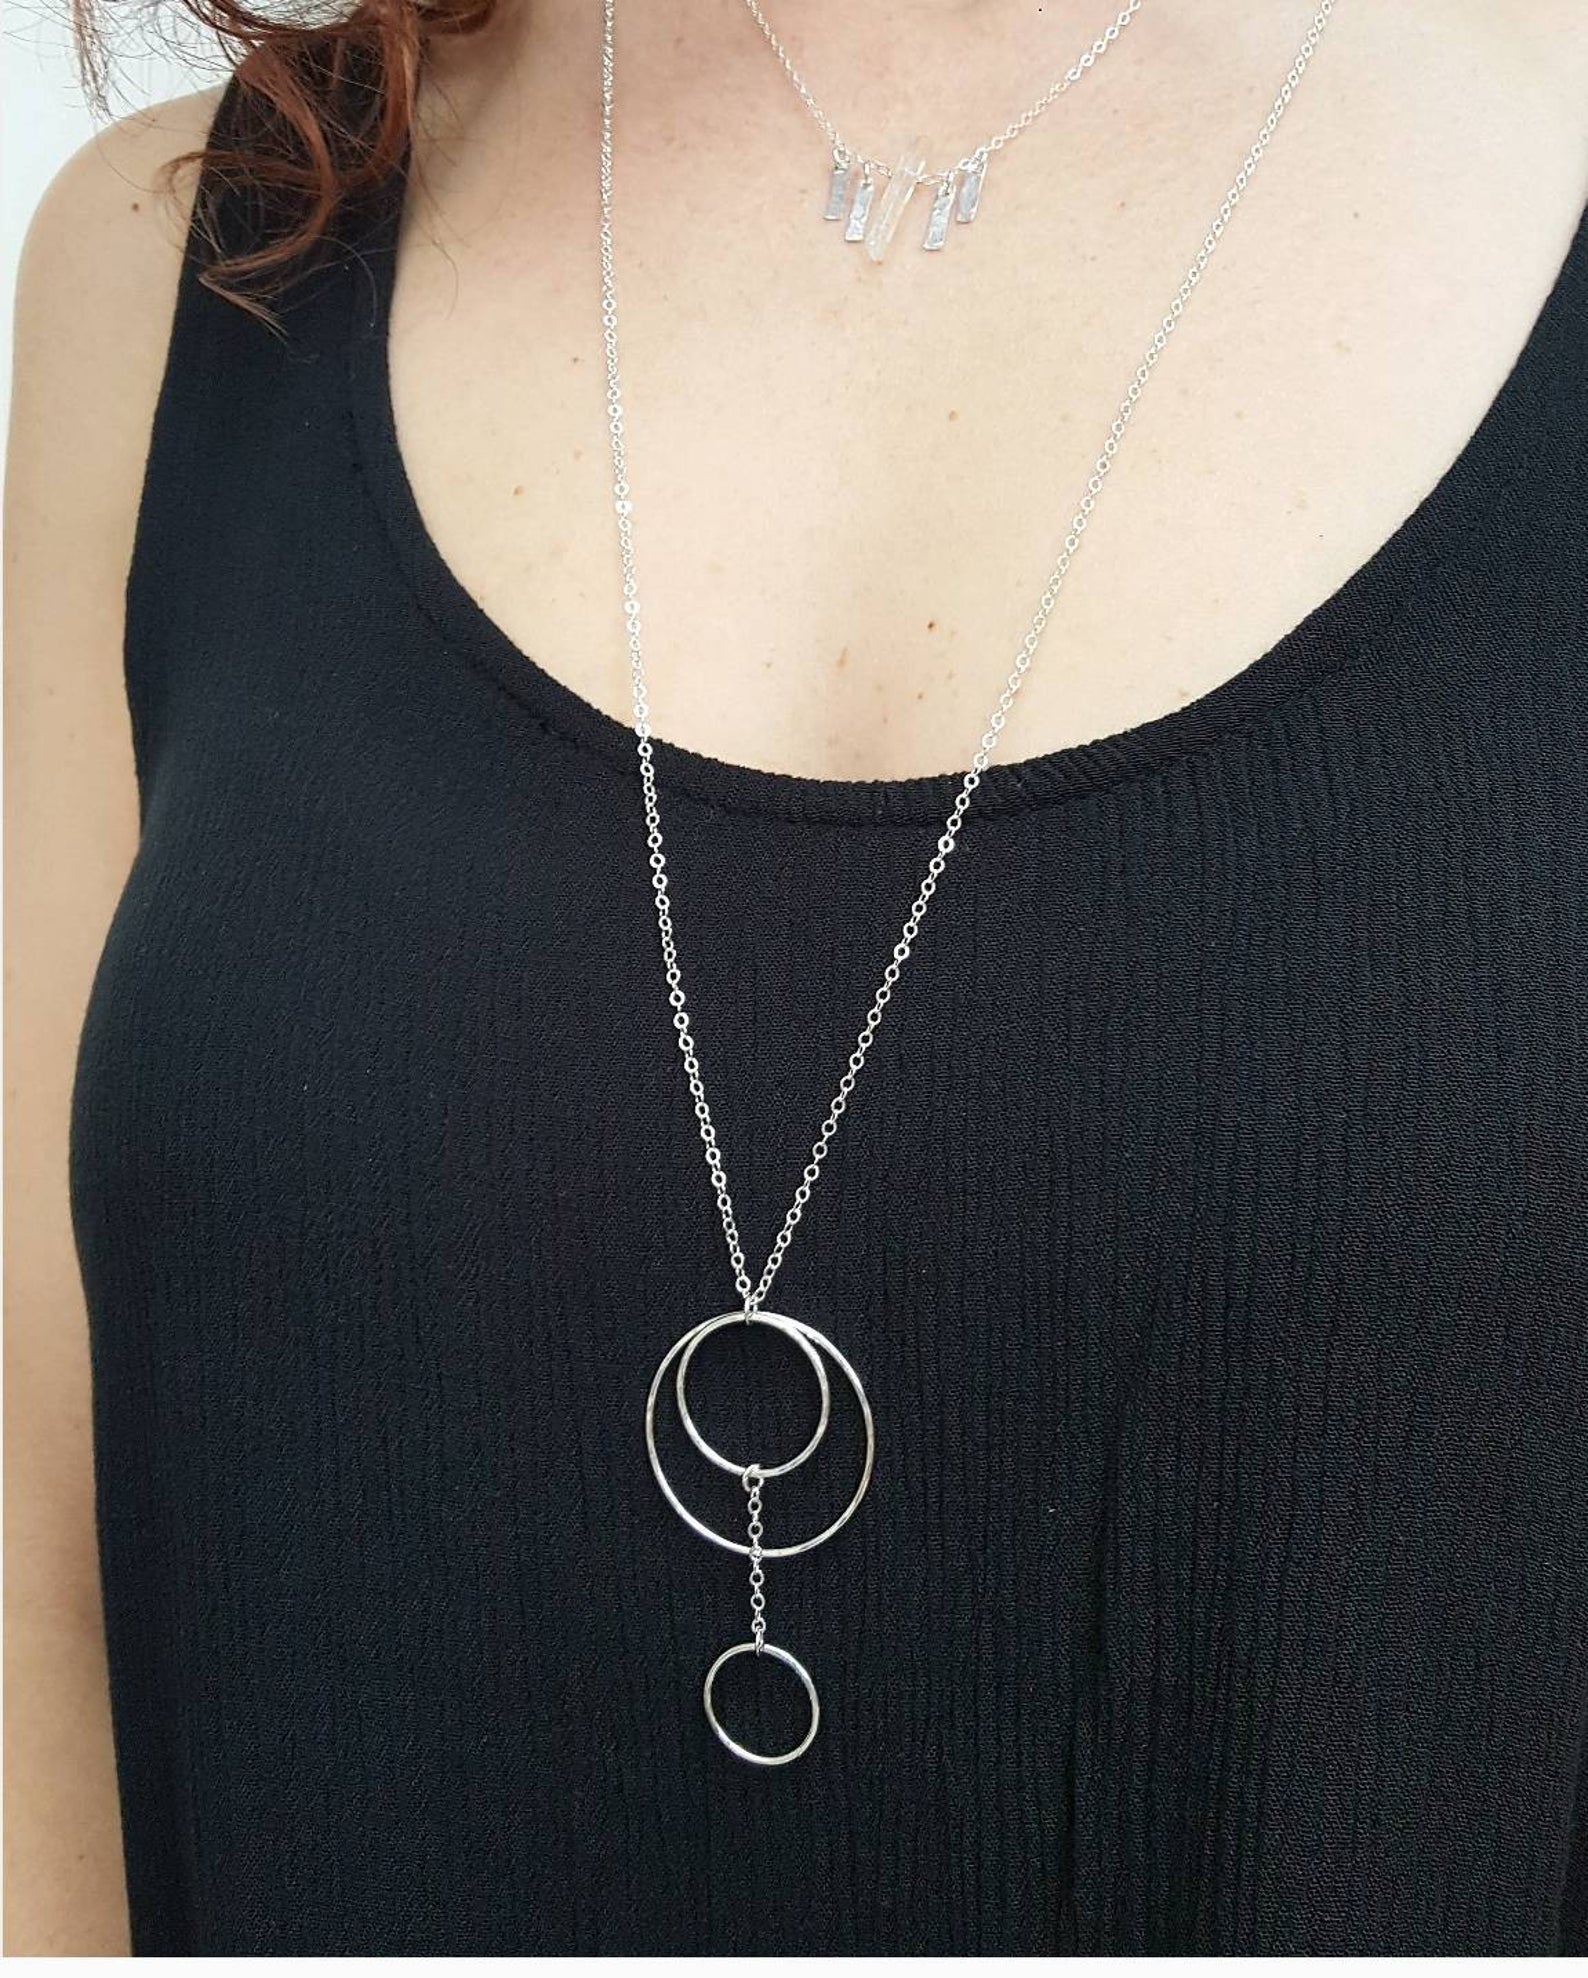 Runa | dainty silver chain with circle pendant – Rebecca Wolf Design